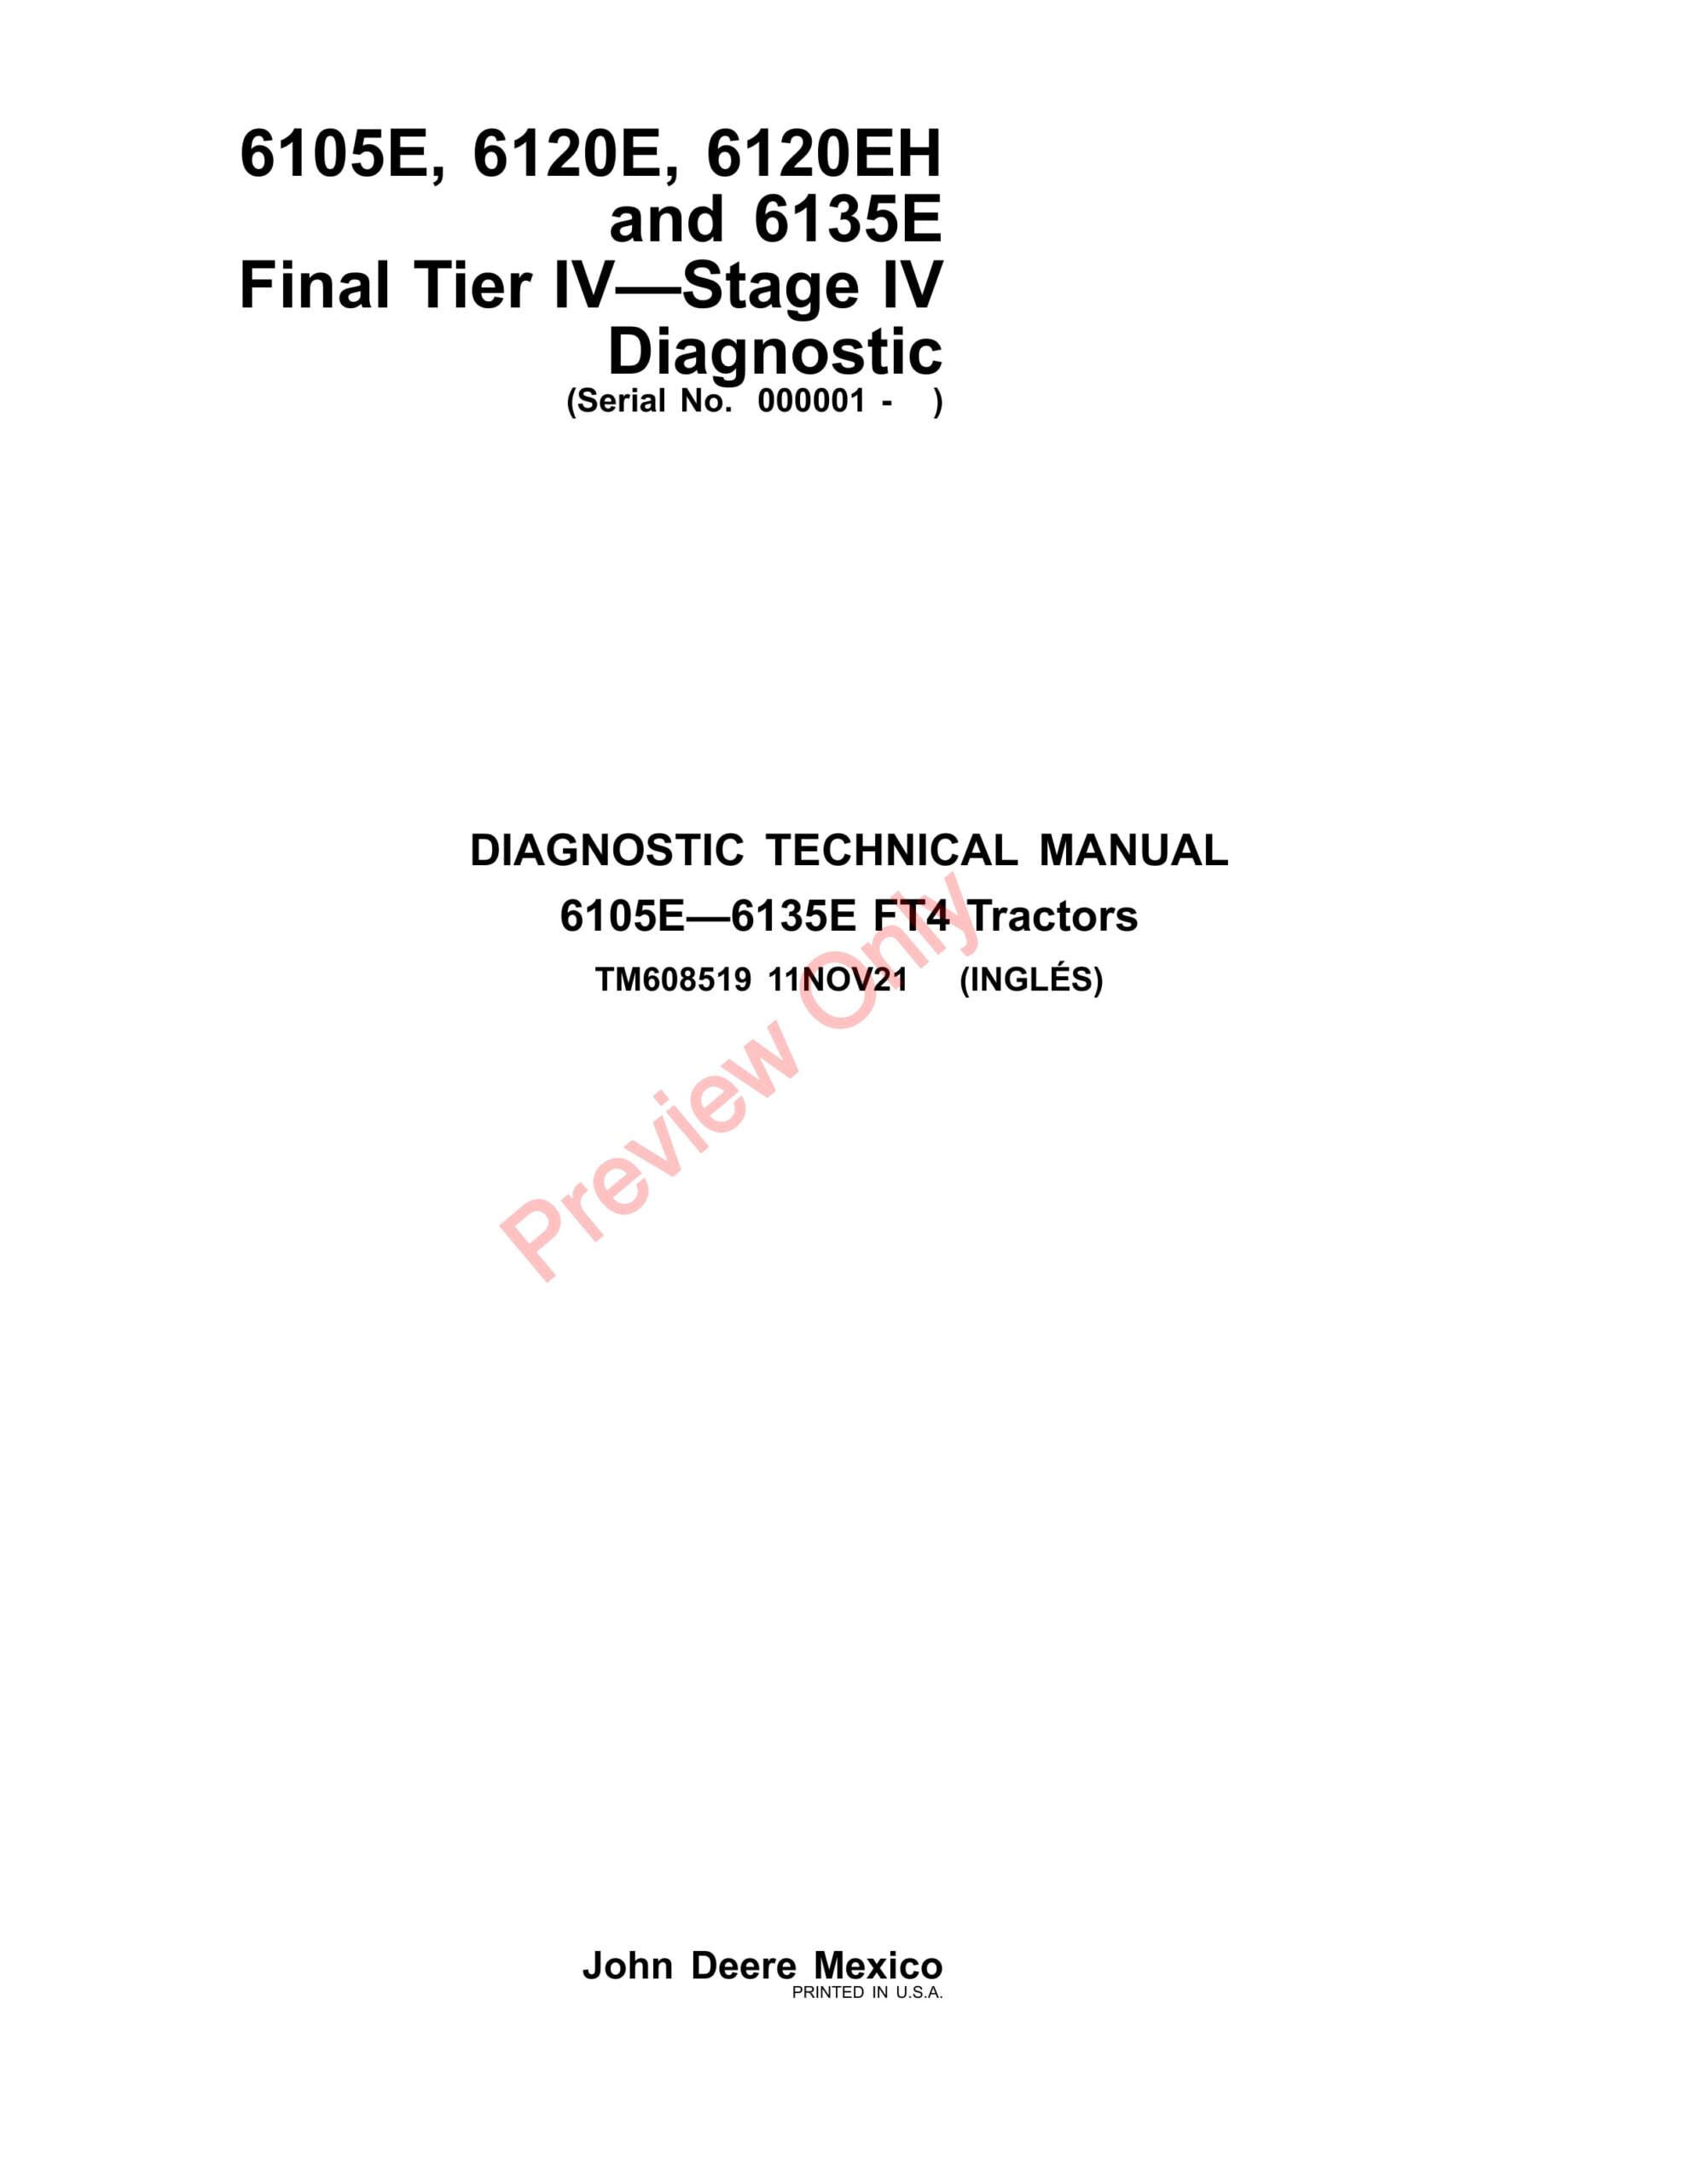 John Deere 6105E, 6120E, 6120EH and 6135E Final Tier IV—Stage IV Diagnostic Technical Manual TM608519 11NOV21-1